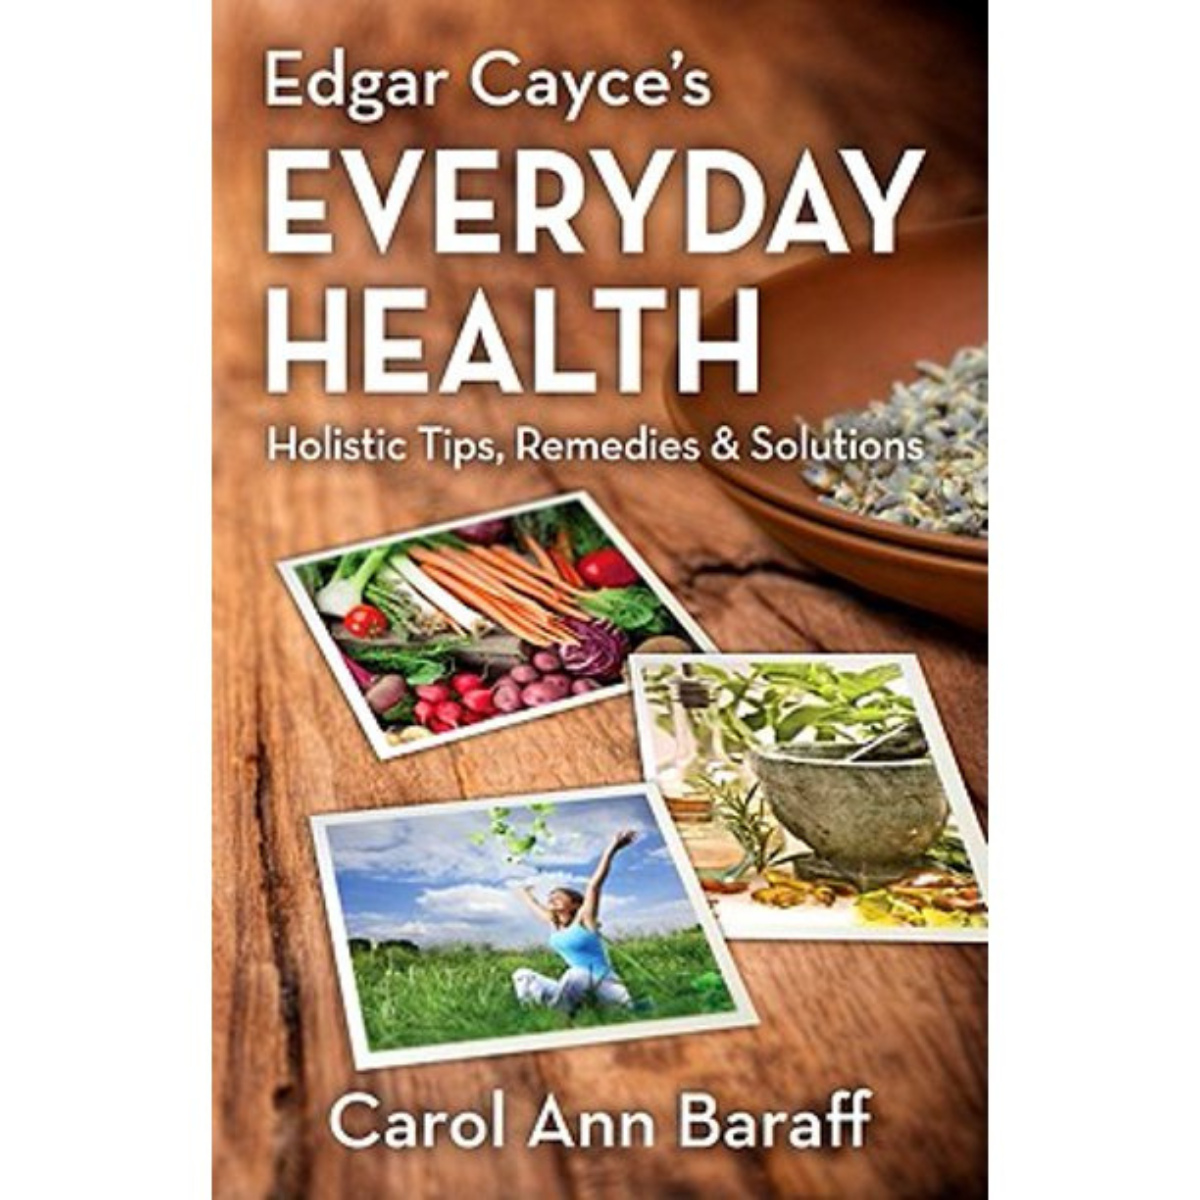 Edgar Cayce’s Everyday Health